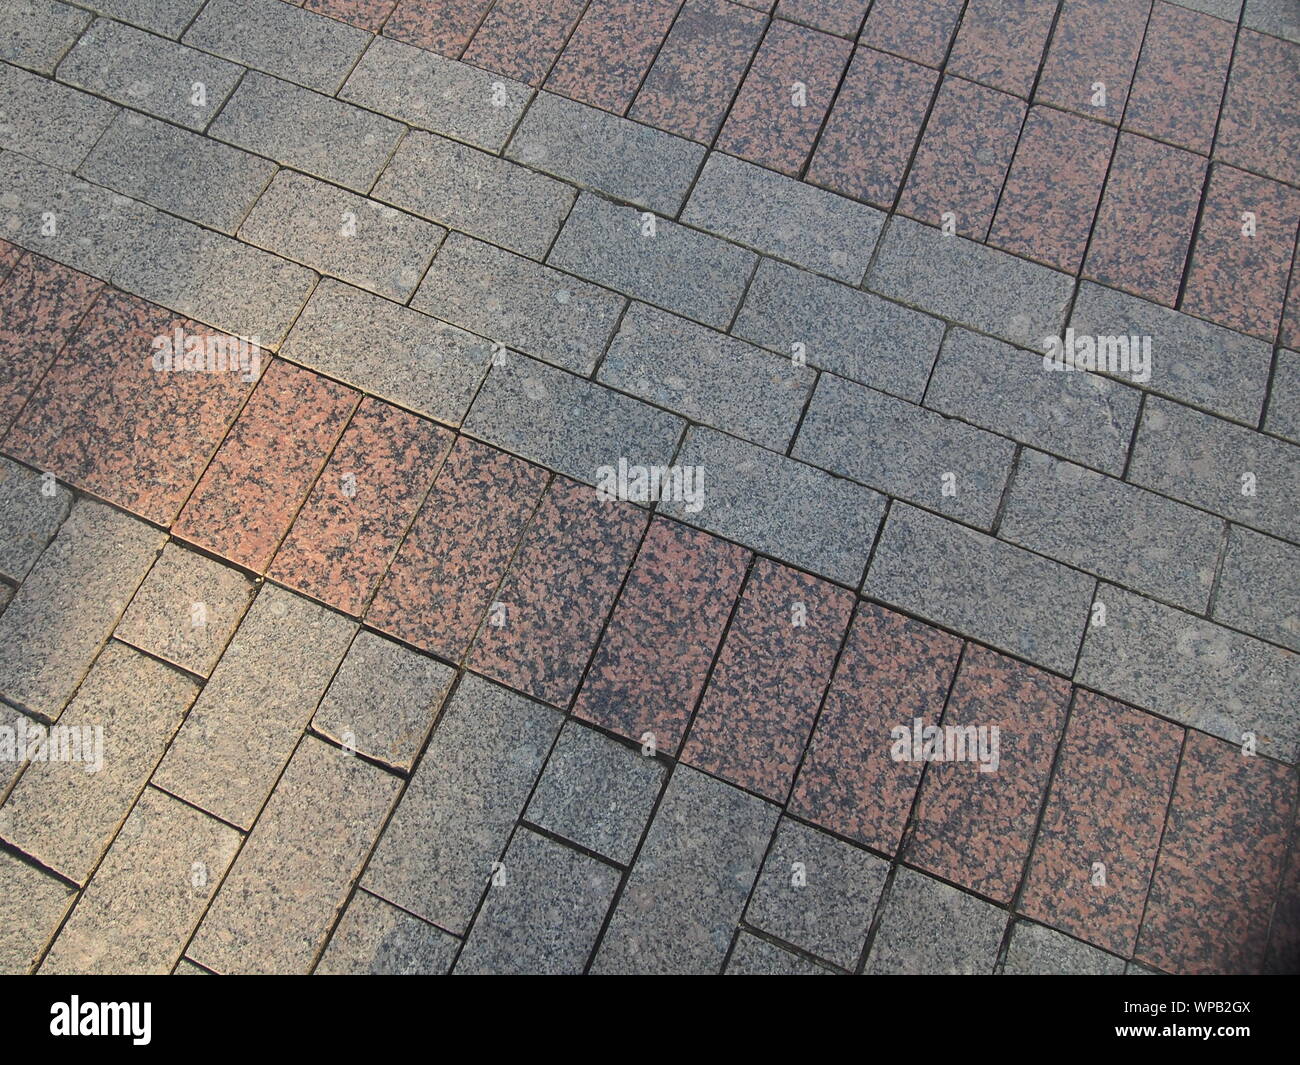 Pavés granit jeté sur la route. Trottoir. Photo de fond. Banque D'Images